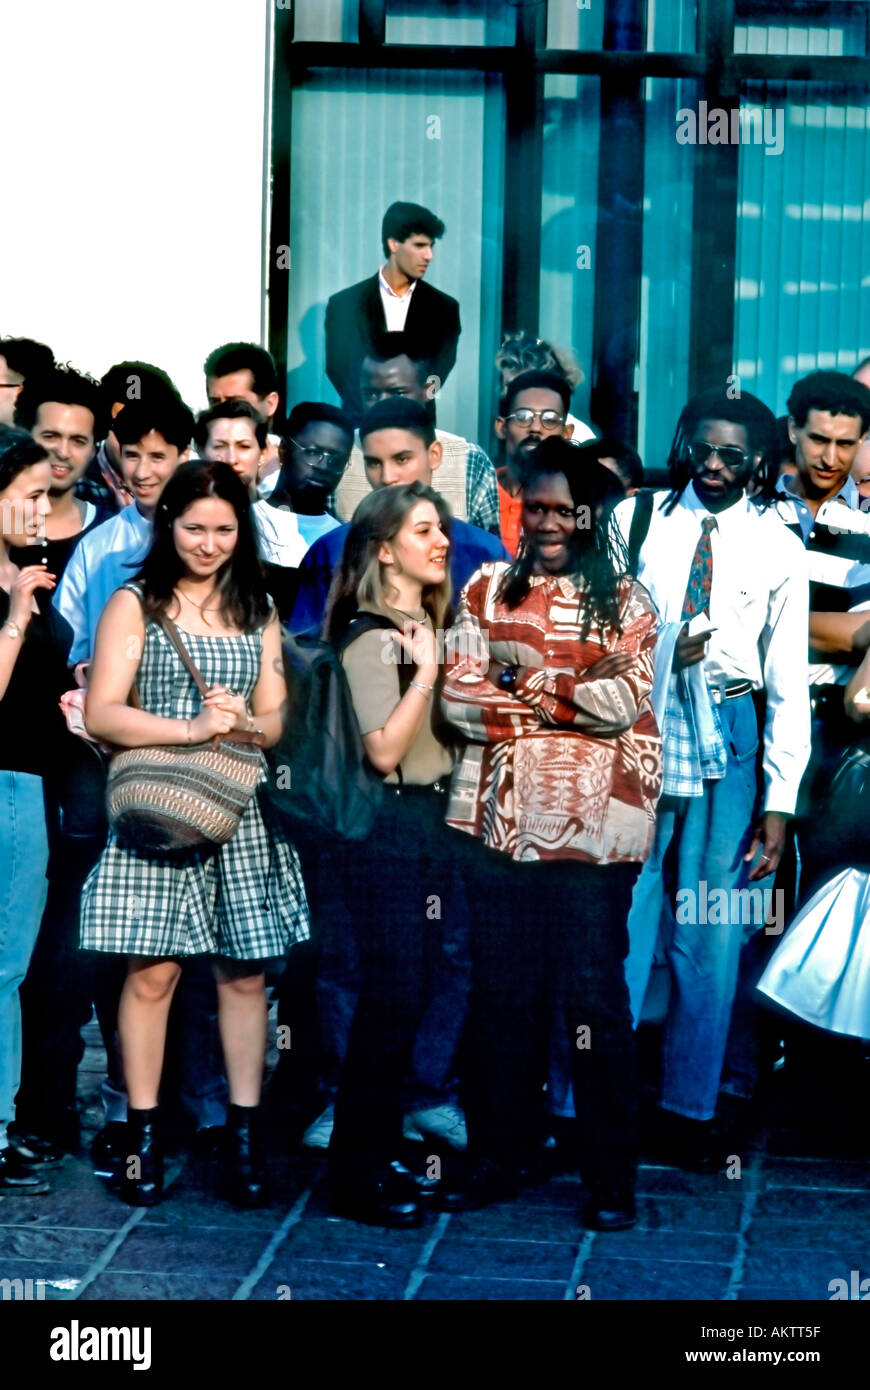 Parigi Francia, Street Scene, gare miste, grande folla, guardare Teen Performance Group, stare all'aperto, multiculturale, persone diverse in tutto il mondo Foto Stock